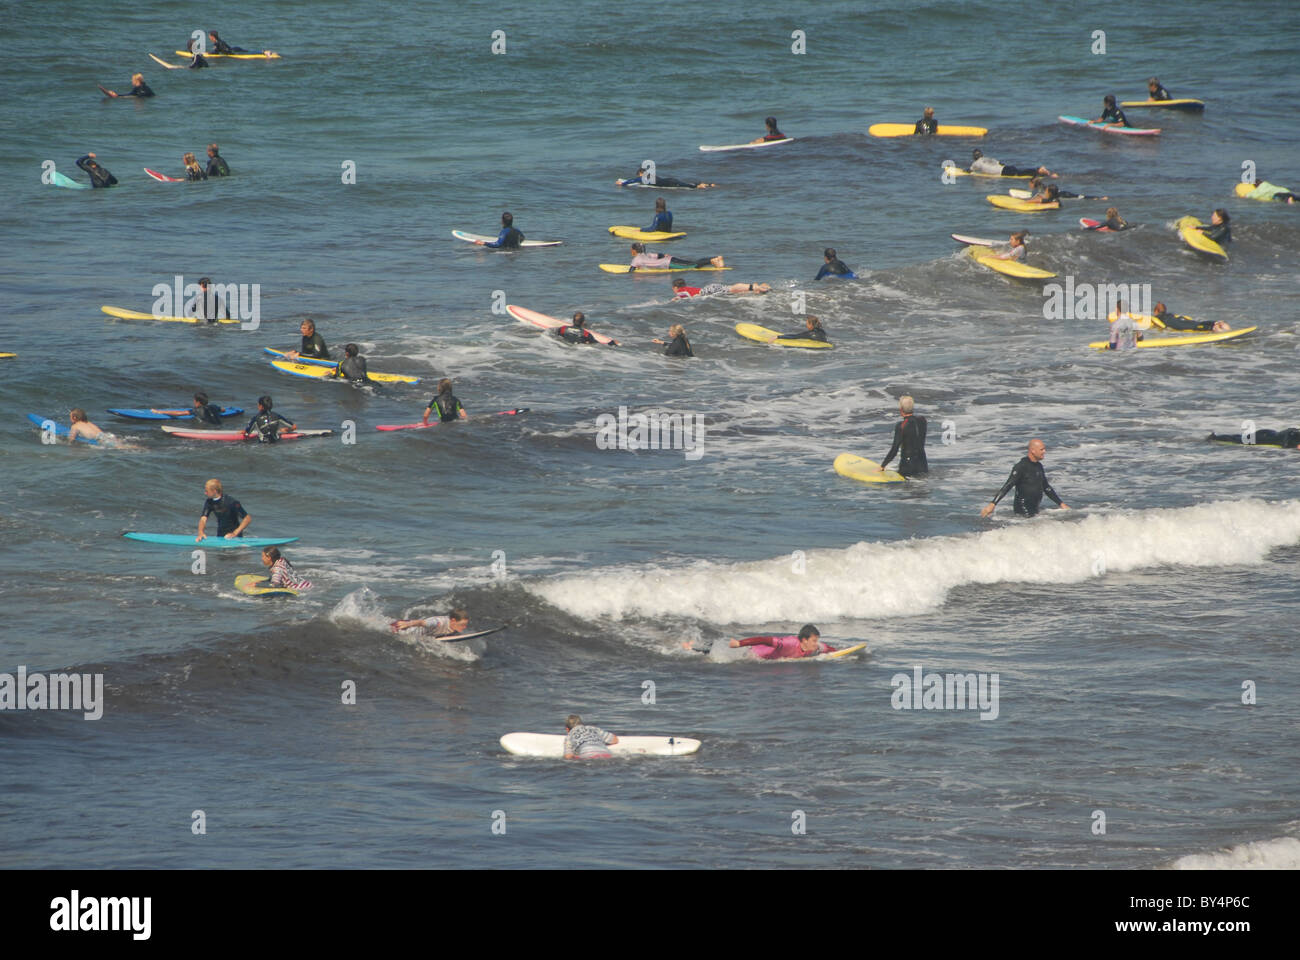 Surf zone encombrée de surfers sur une journée d'été à Cornwall, prise à Polzeath, Cornwall Banque D'Images